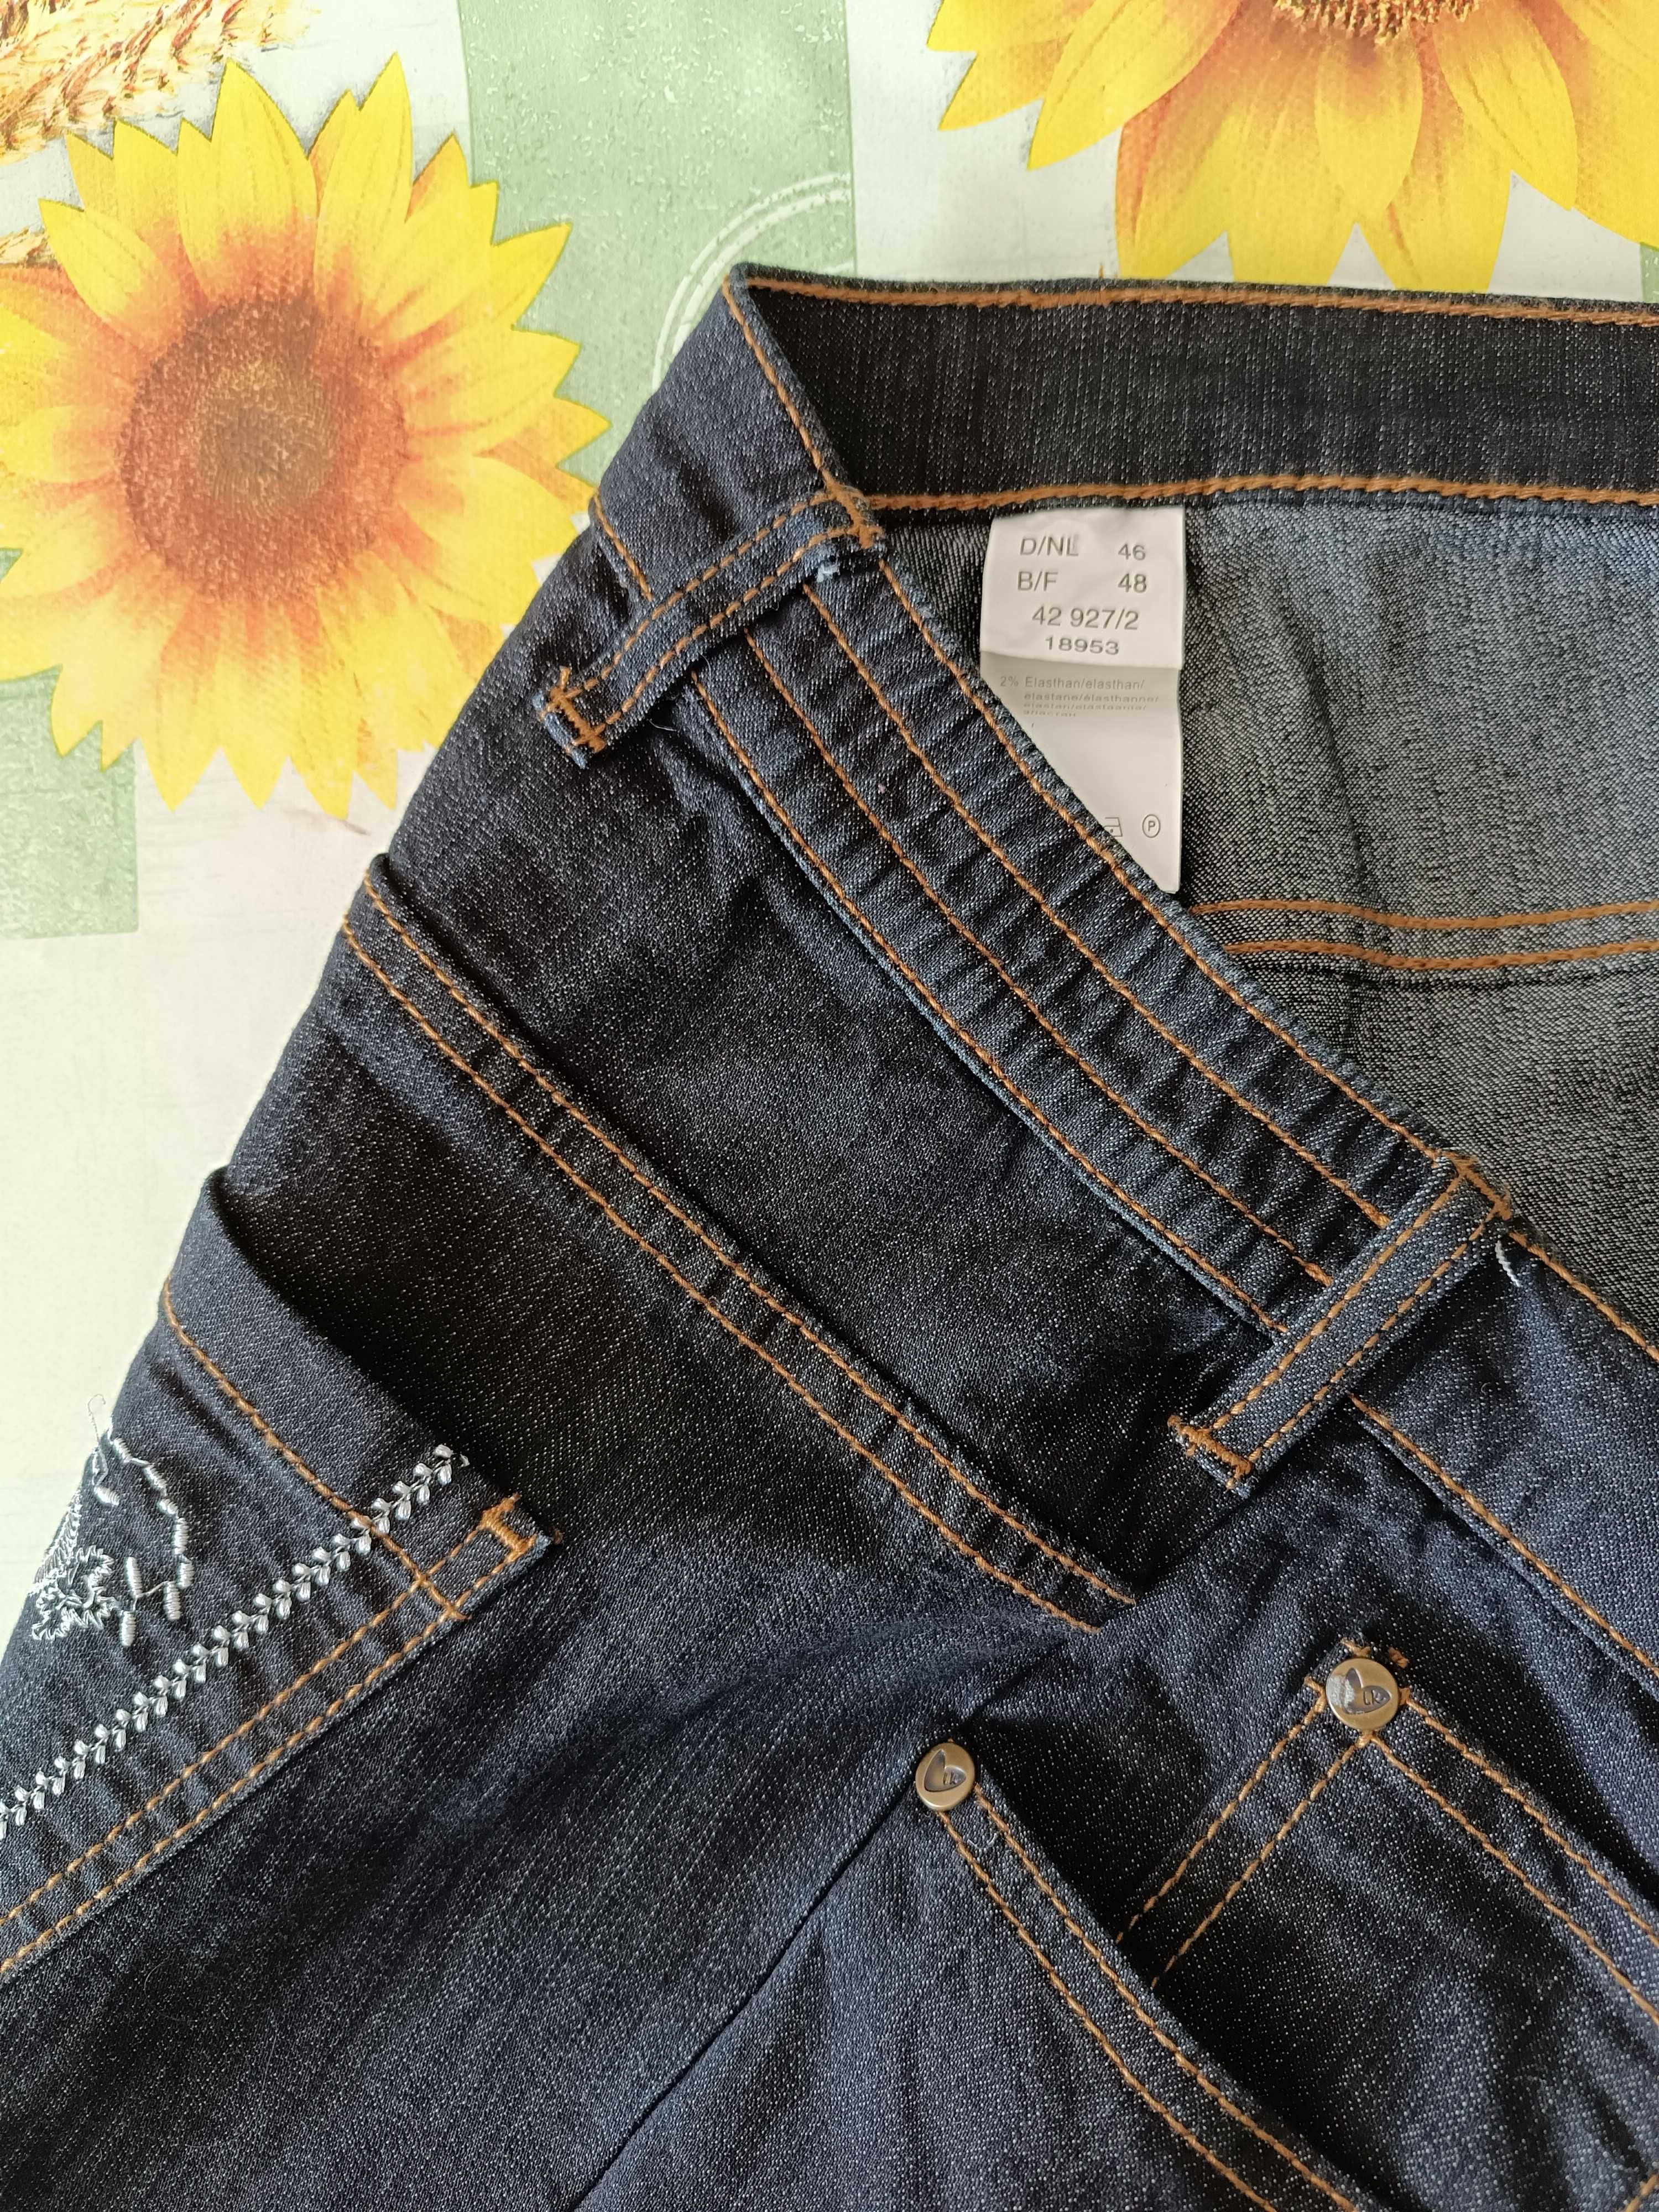 р 18/52-54чорно-сині джинси штани великі батал довгі на високий зріст